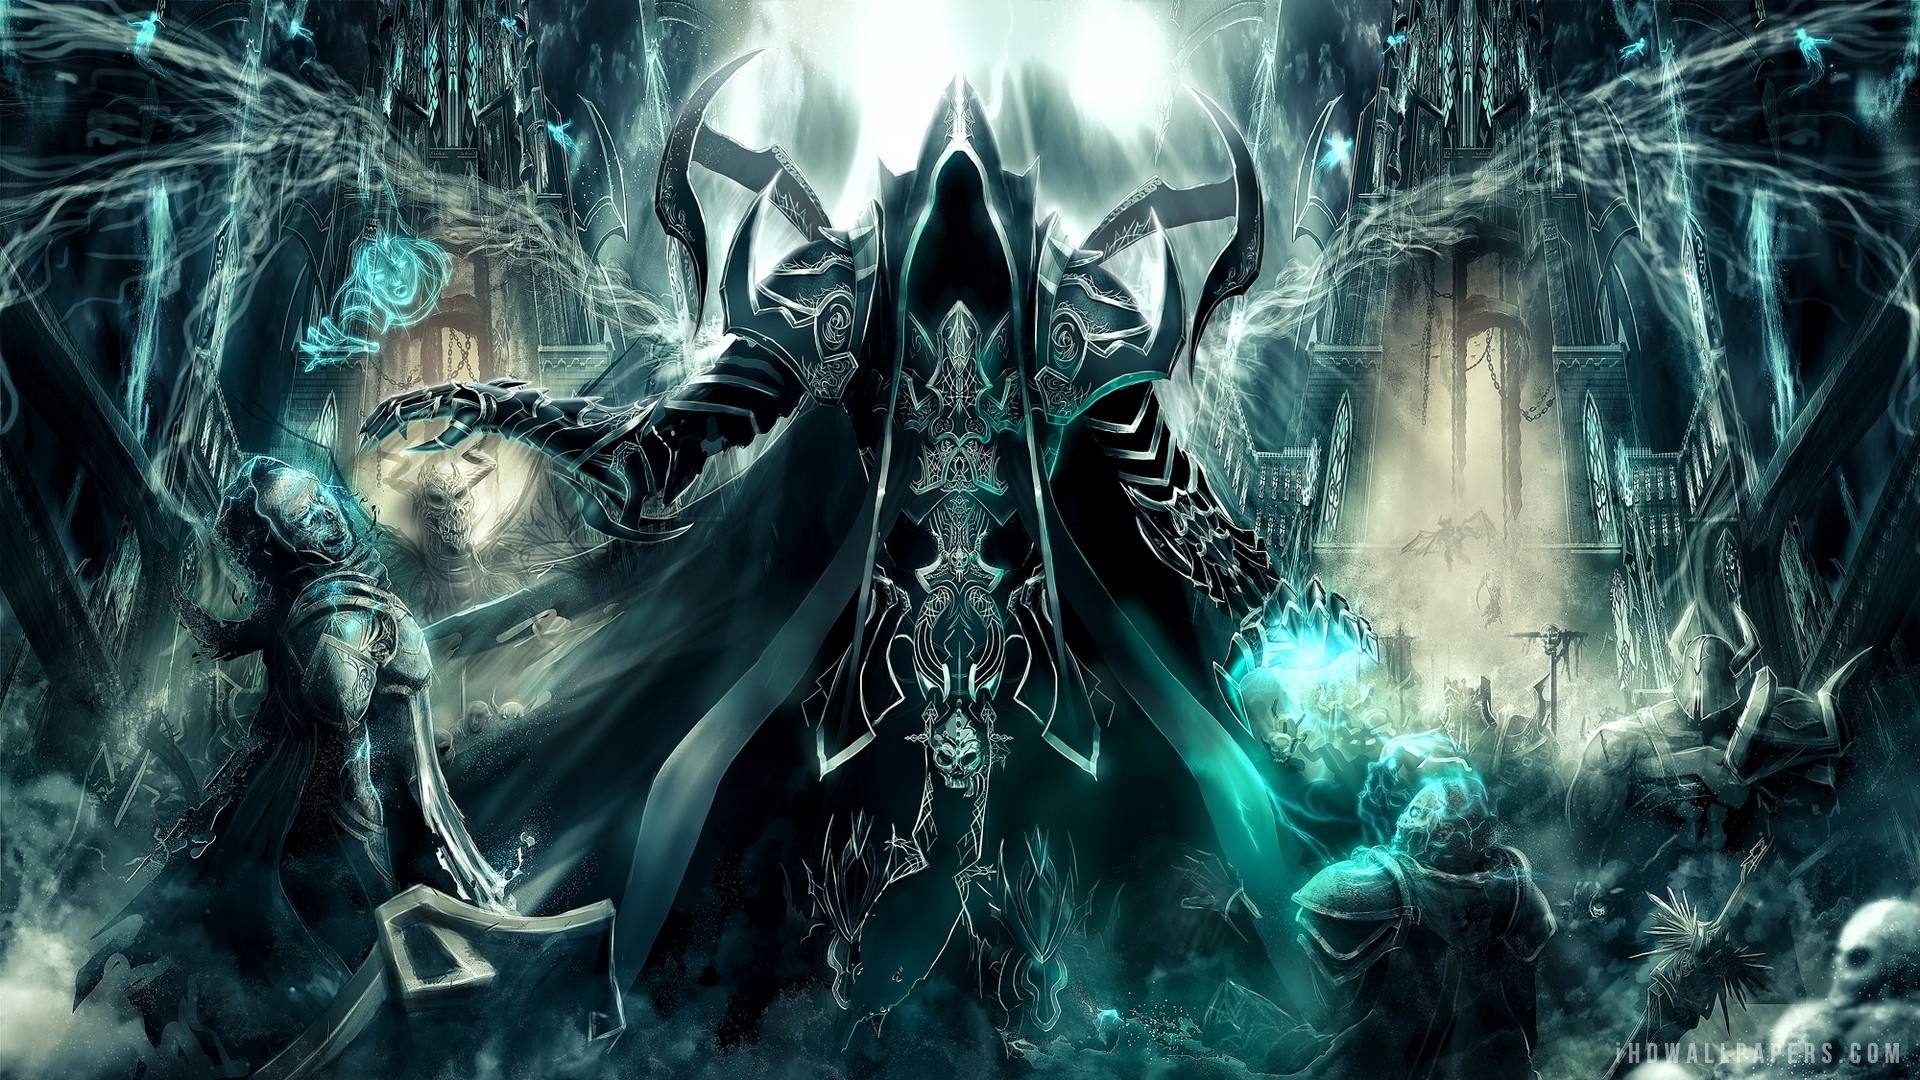 Diablo Iii Reaper Of Souls Malthael Wallpaper From The